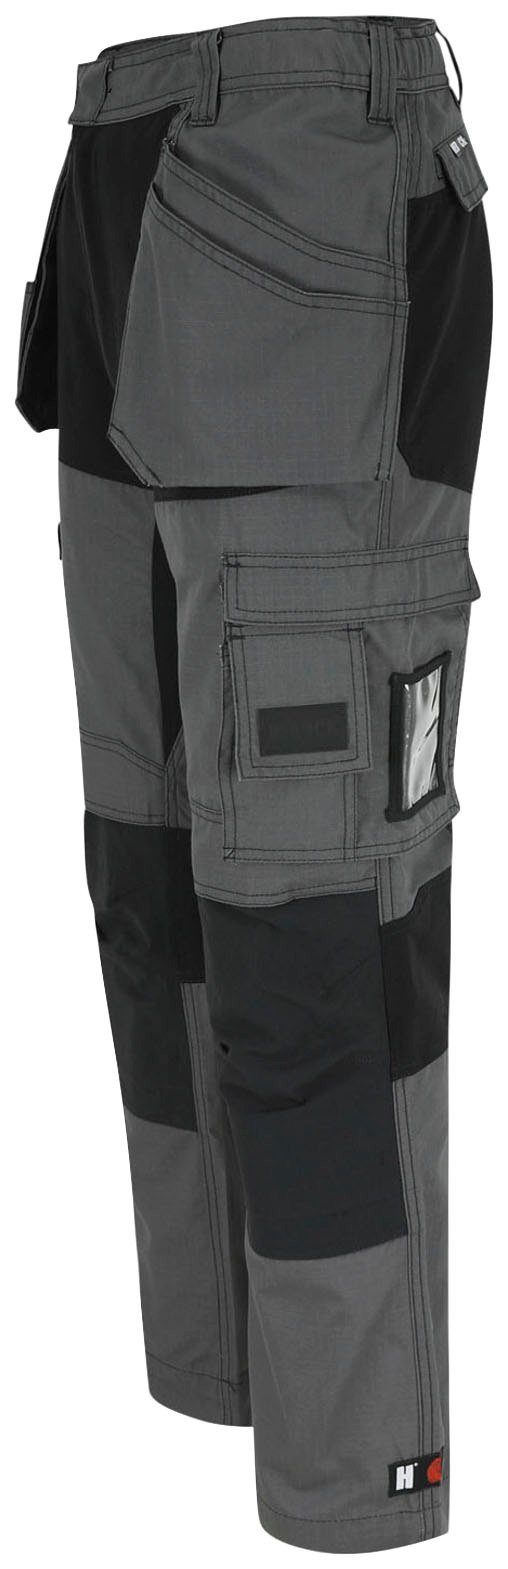 Herock Arbeitshose 4-Wege-Stretch-Teilen und festen grau-schwarz Nageltaschen mit Multi-Pocket-Hose Hose Spector 2